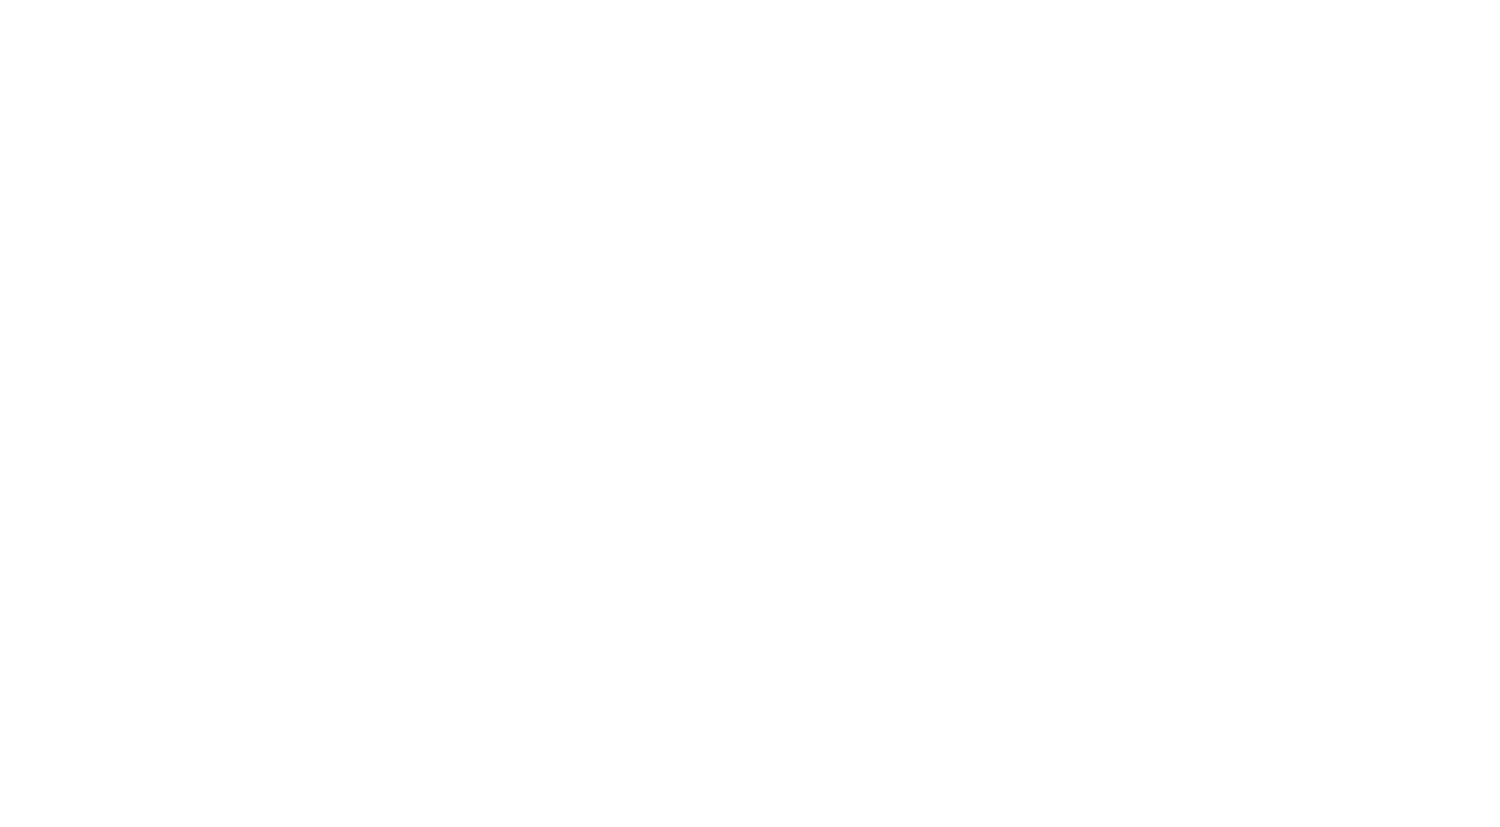 sophia leadership